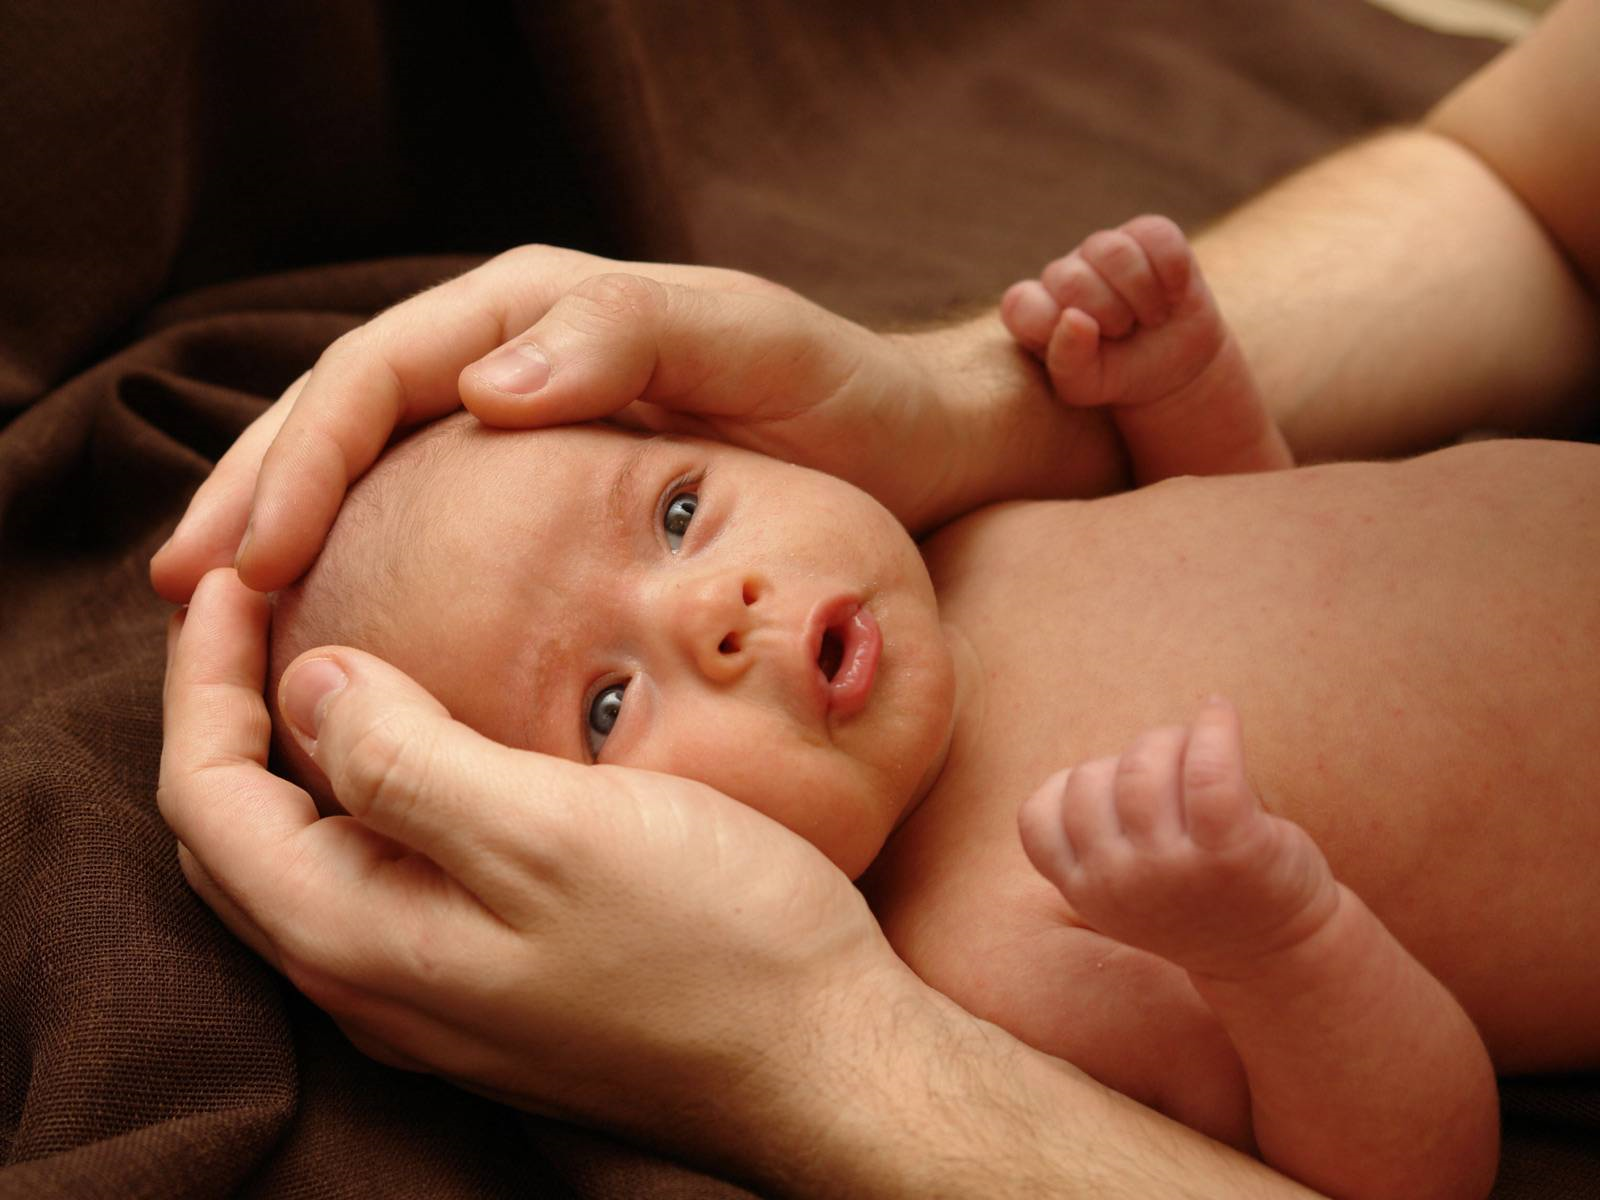 العناية بالمولود و حديث الولادة